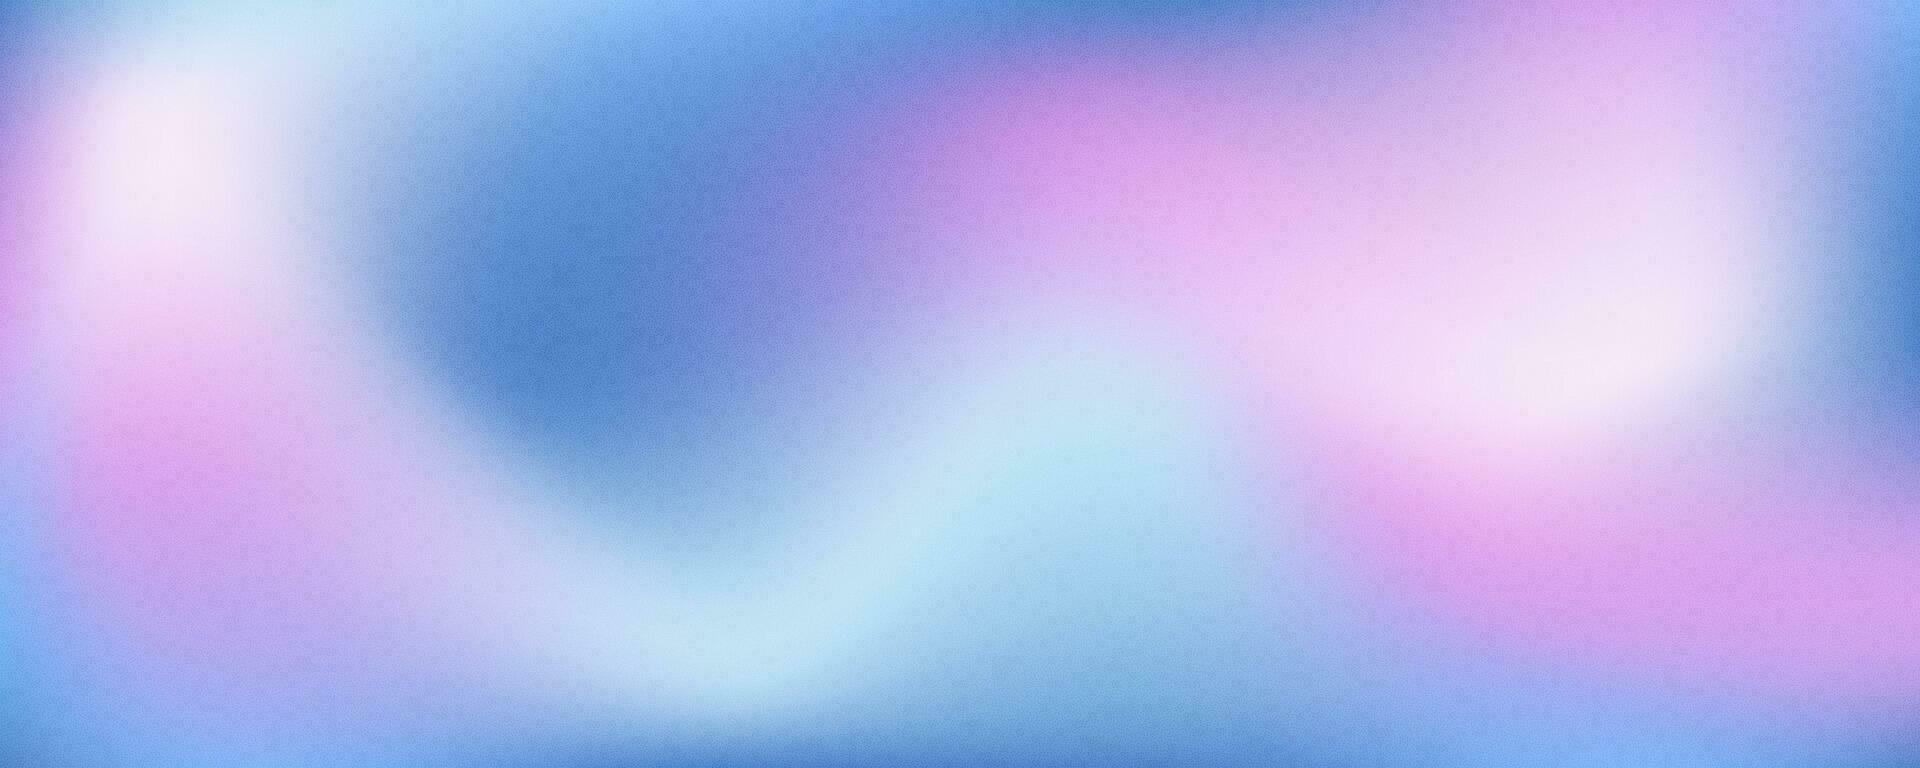 helling gekleurde achtergrond. zacht roze en blauw korrelig gradatie. wazig retro poster met abstract lawaai textuur. vector